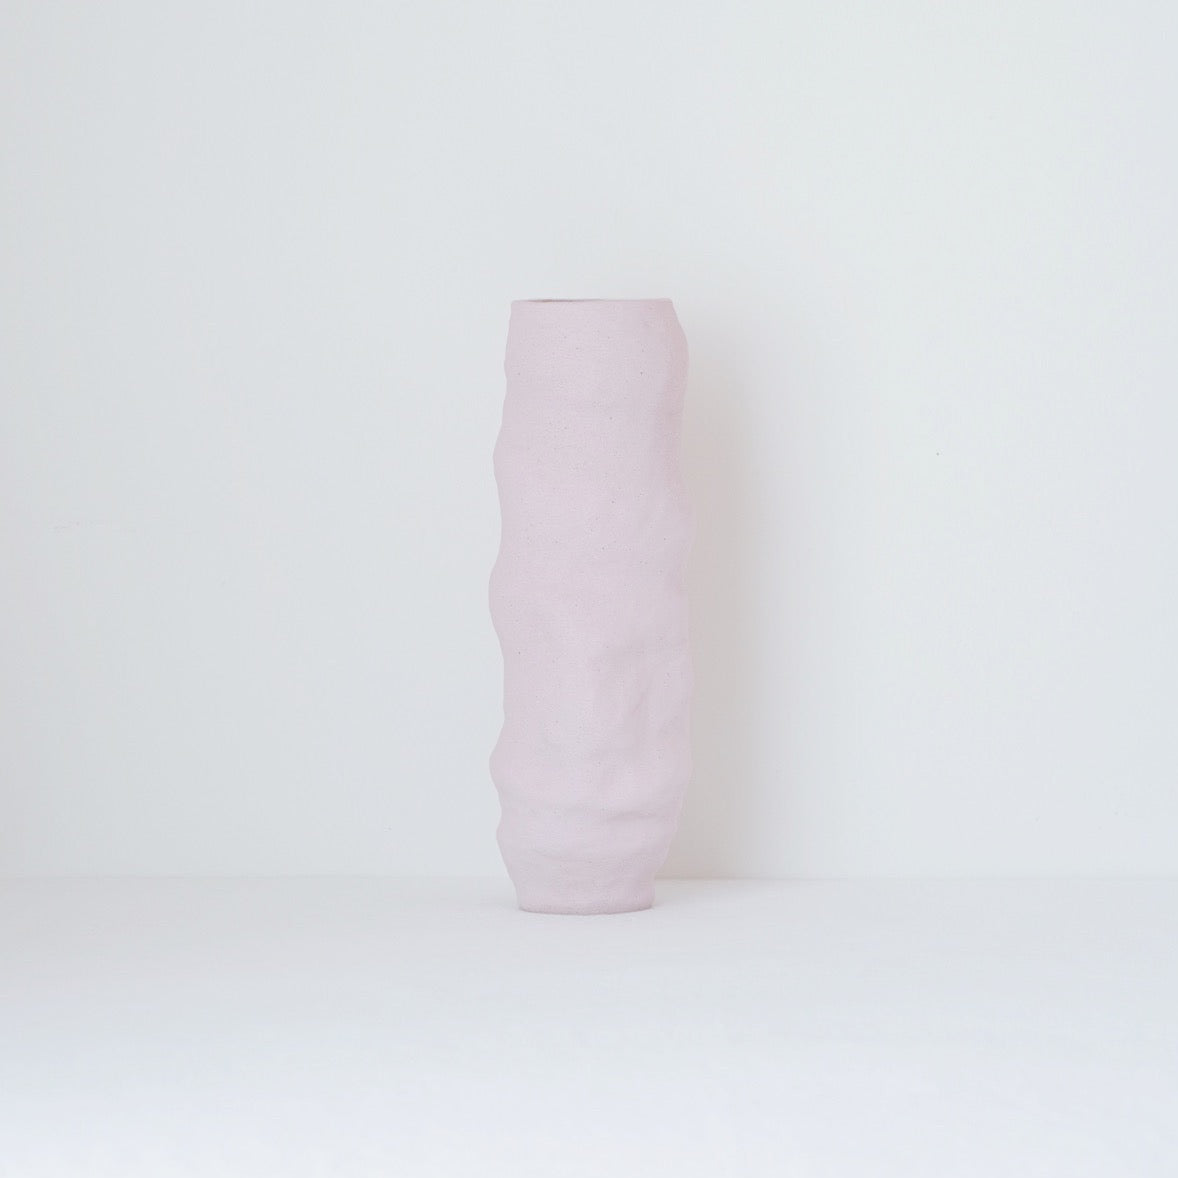 Belly Vase, 2021 - Pink